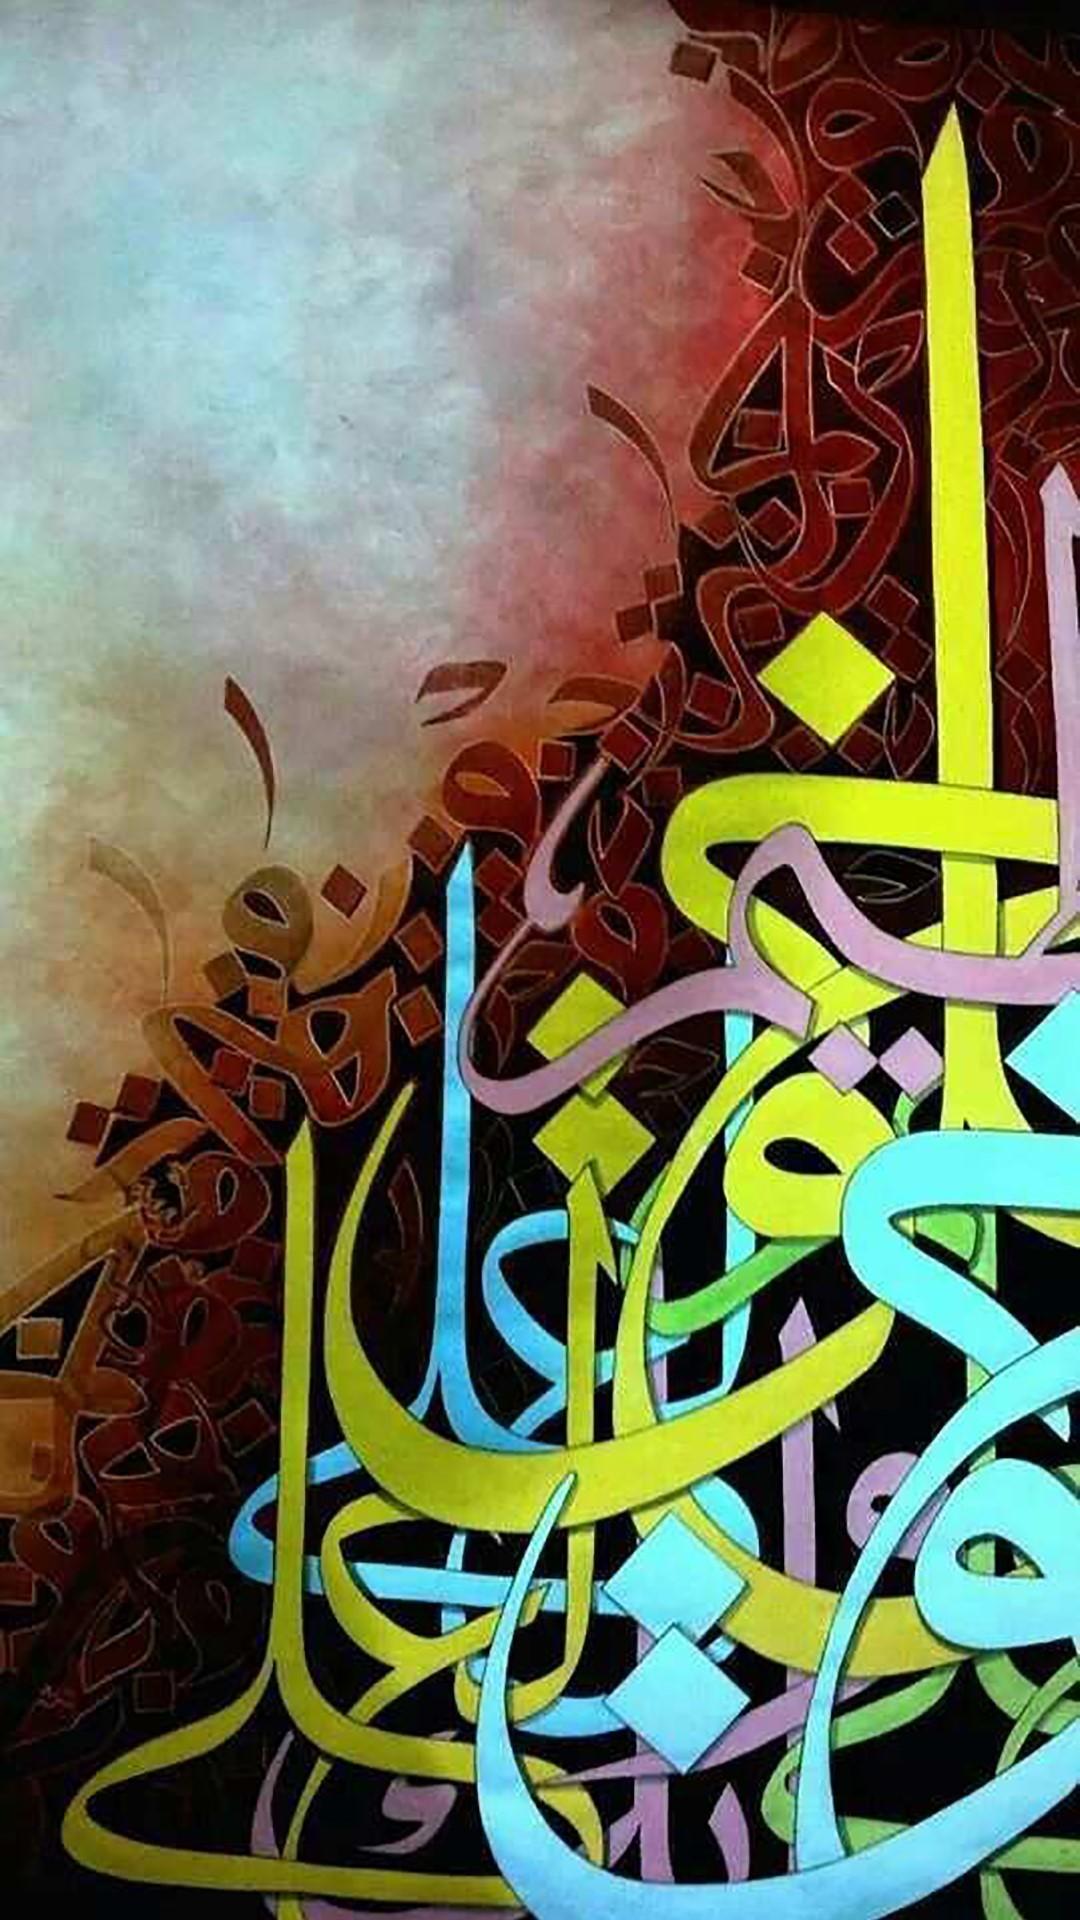 Wallpaper Kaligrafi 46 Islamic Calligraphy Wallpaper on WallpaperSafari Comprises of wide 